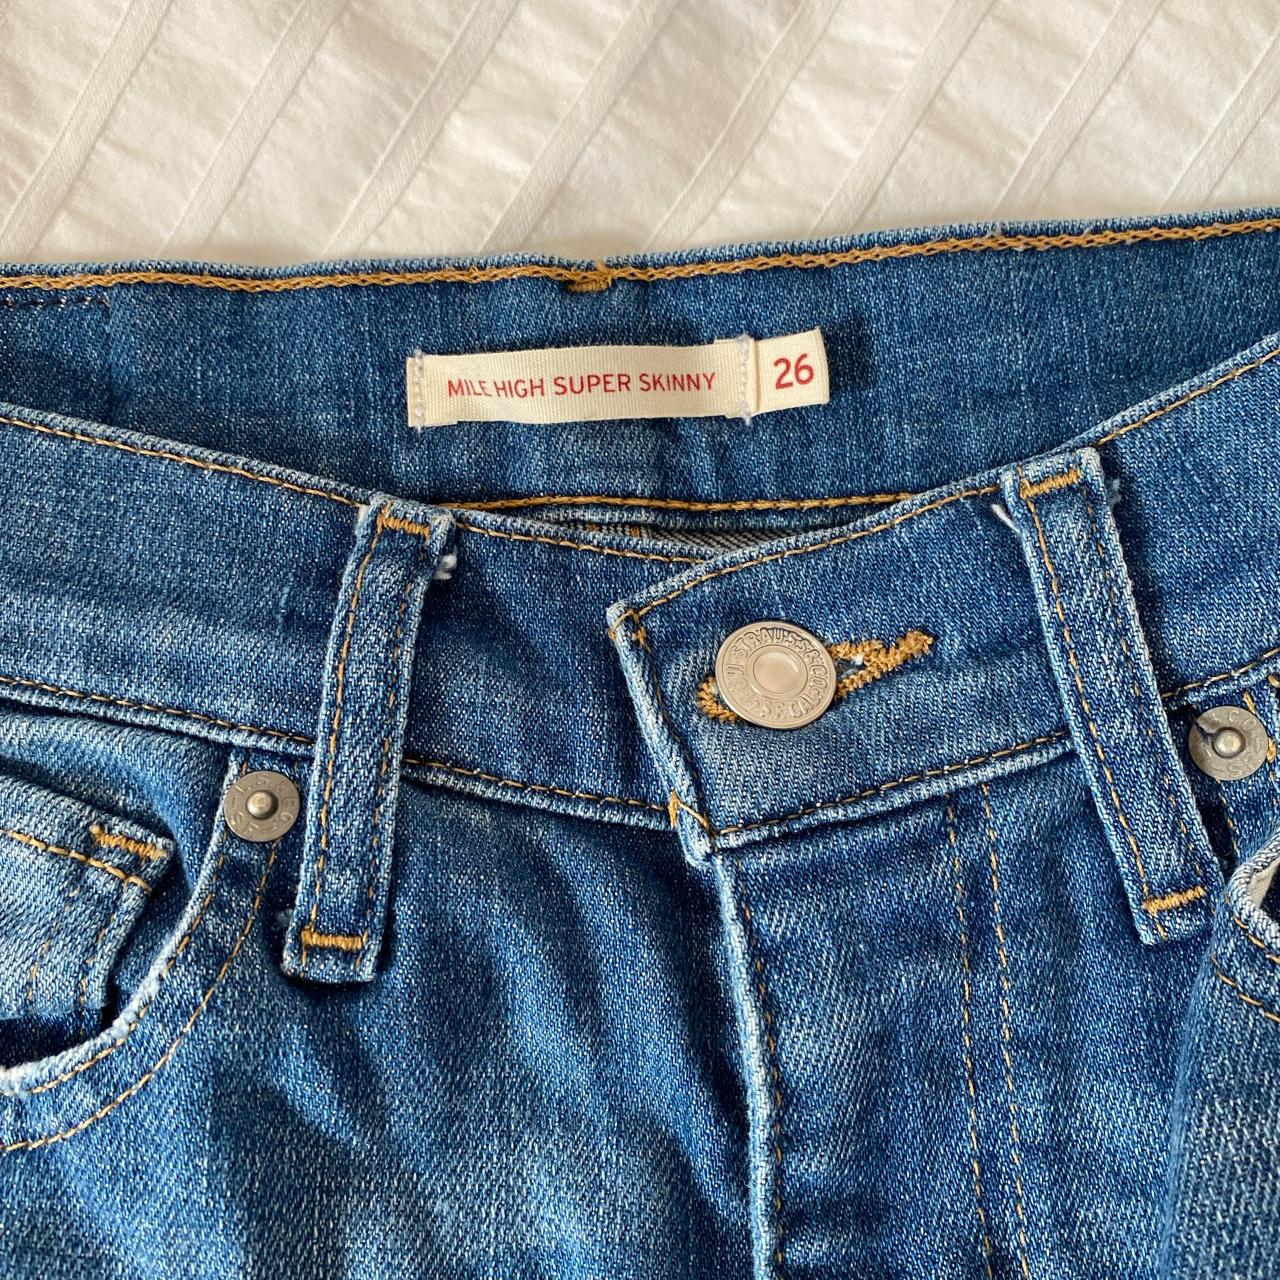 Mile High Super Skinny Levi Jeans for sale. Barely... - Depop